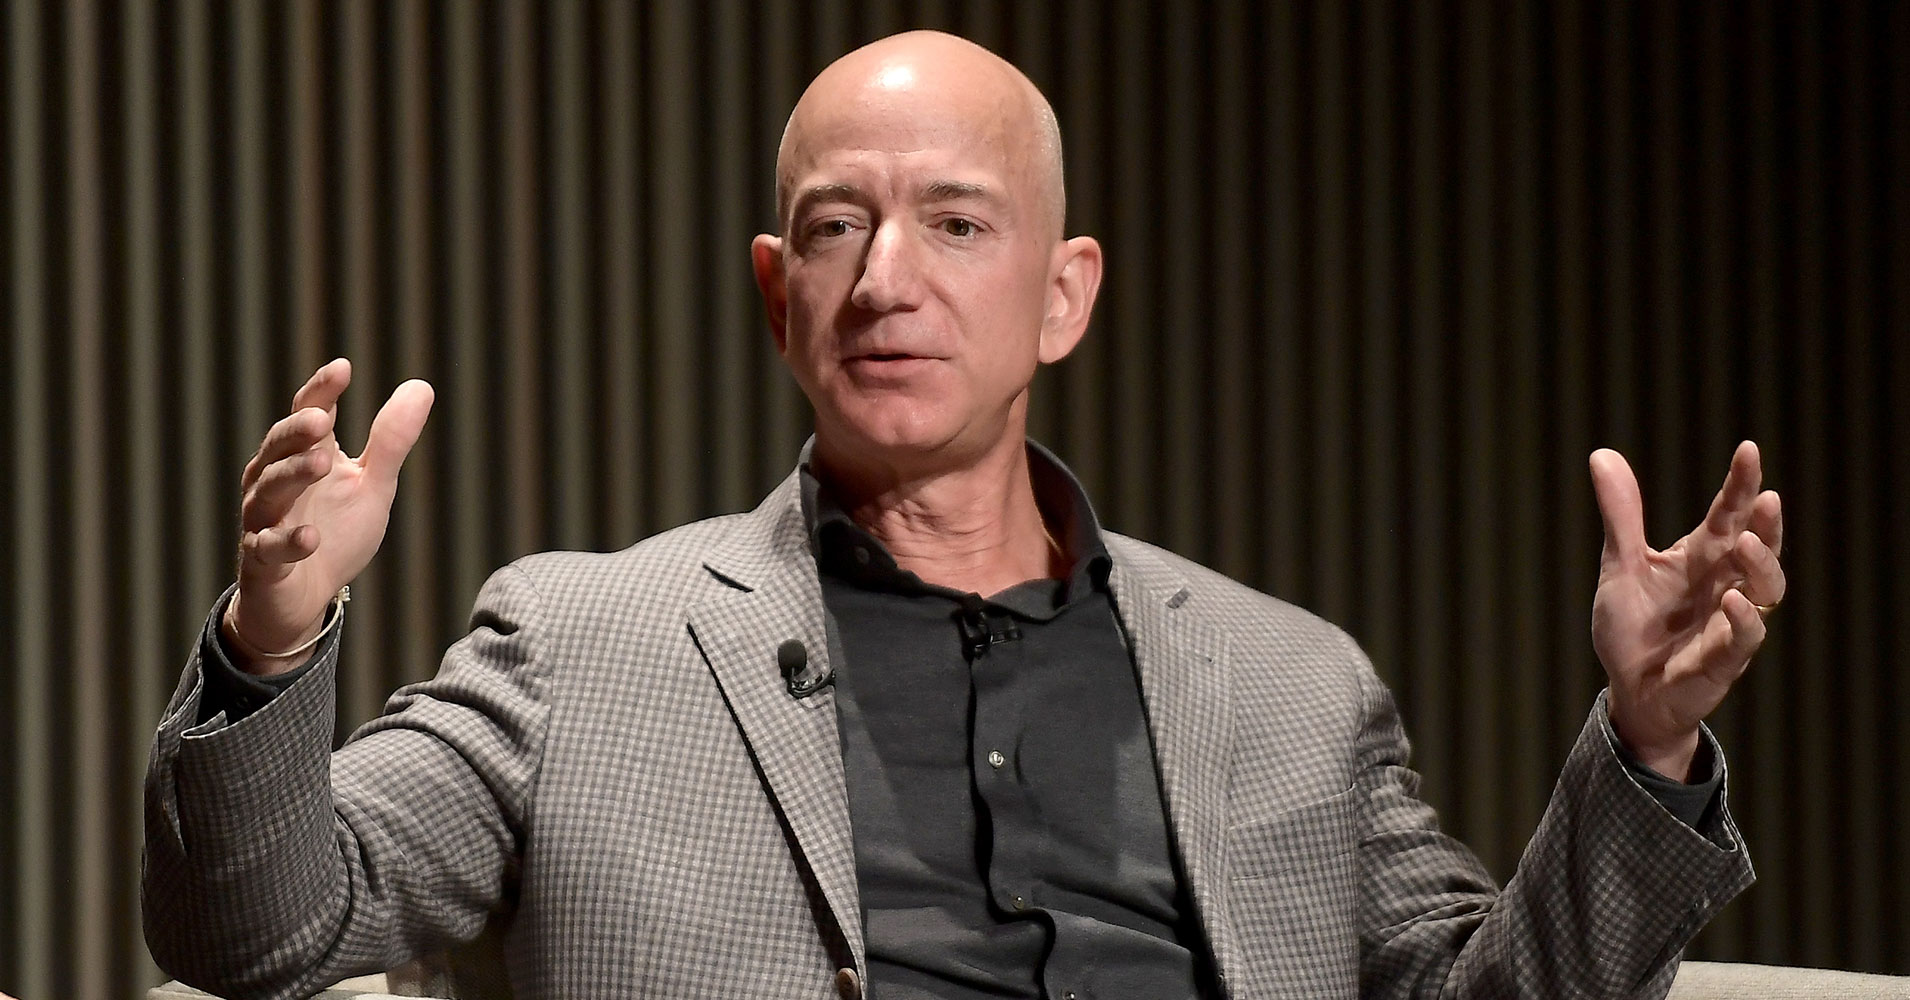 Jeff Bezos cho thấy mình không phải là người dễ dàng thỏa hiệp. Ảnh: Futurism.